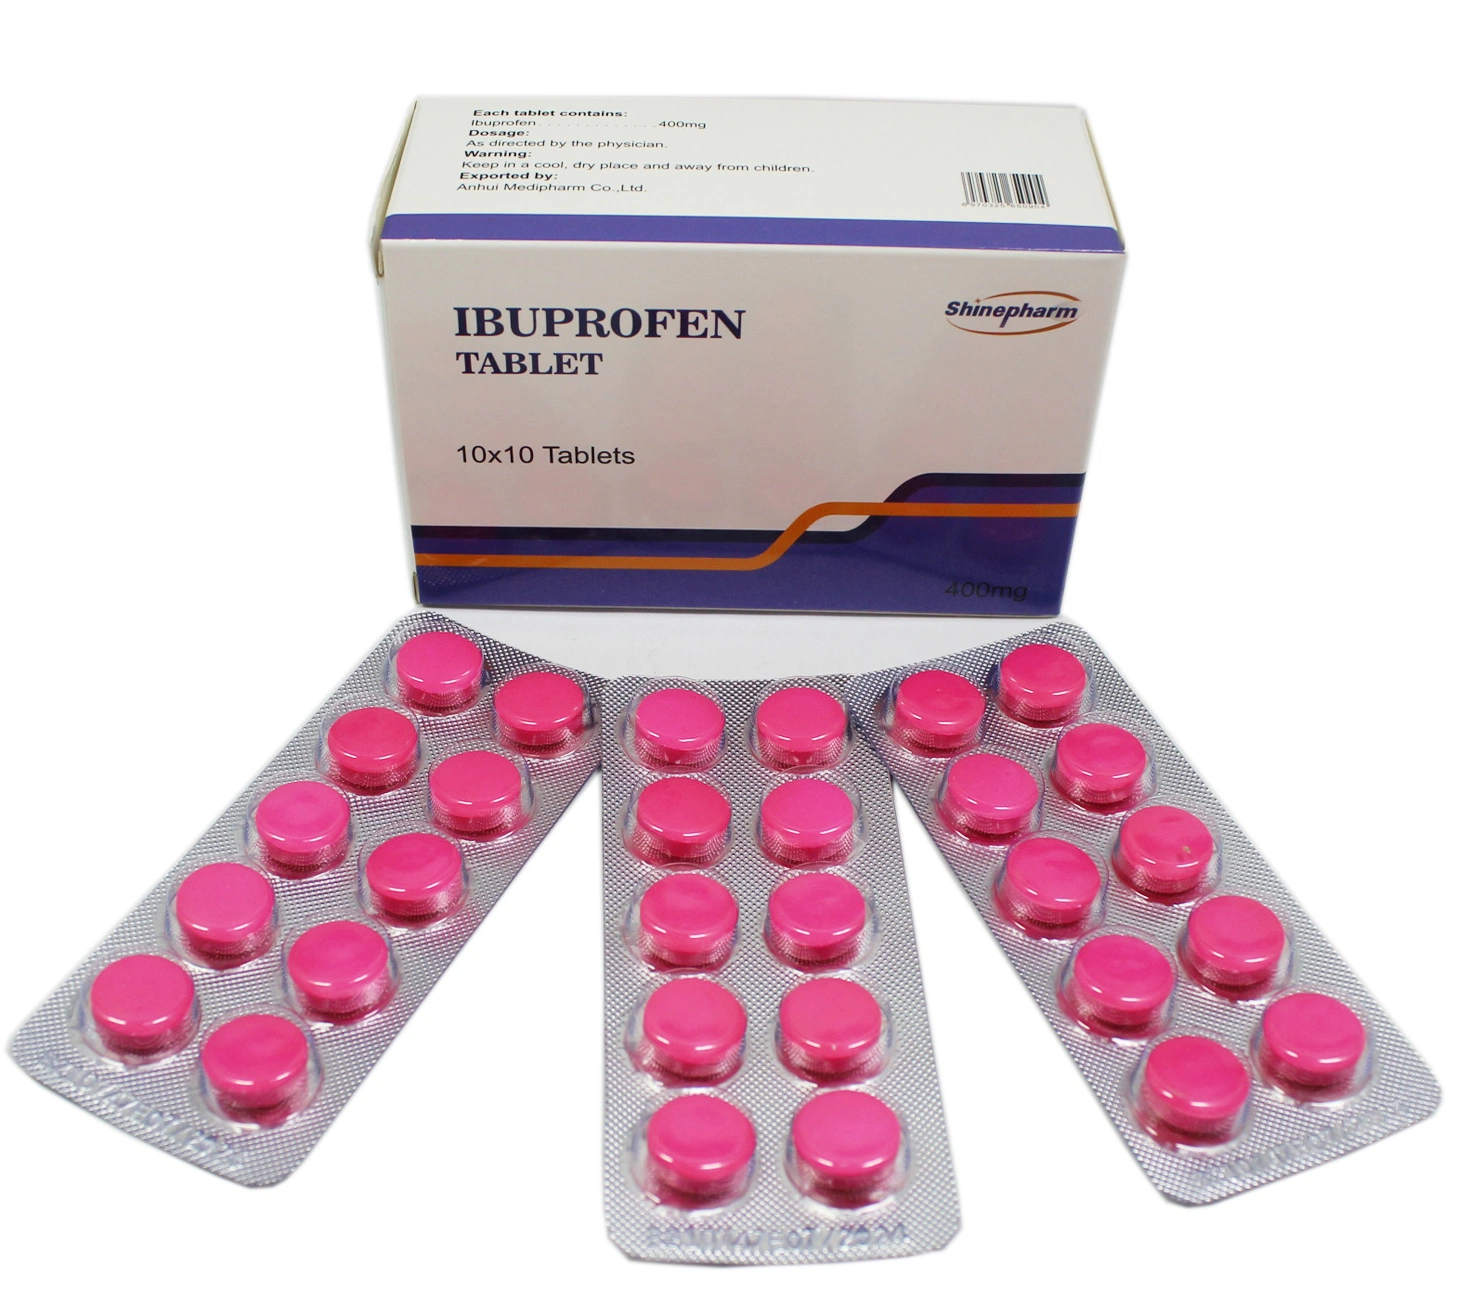 Tableta de ibuprofeno 400mg para analgésico antipirético y antiinflamatorio